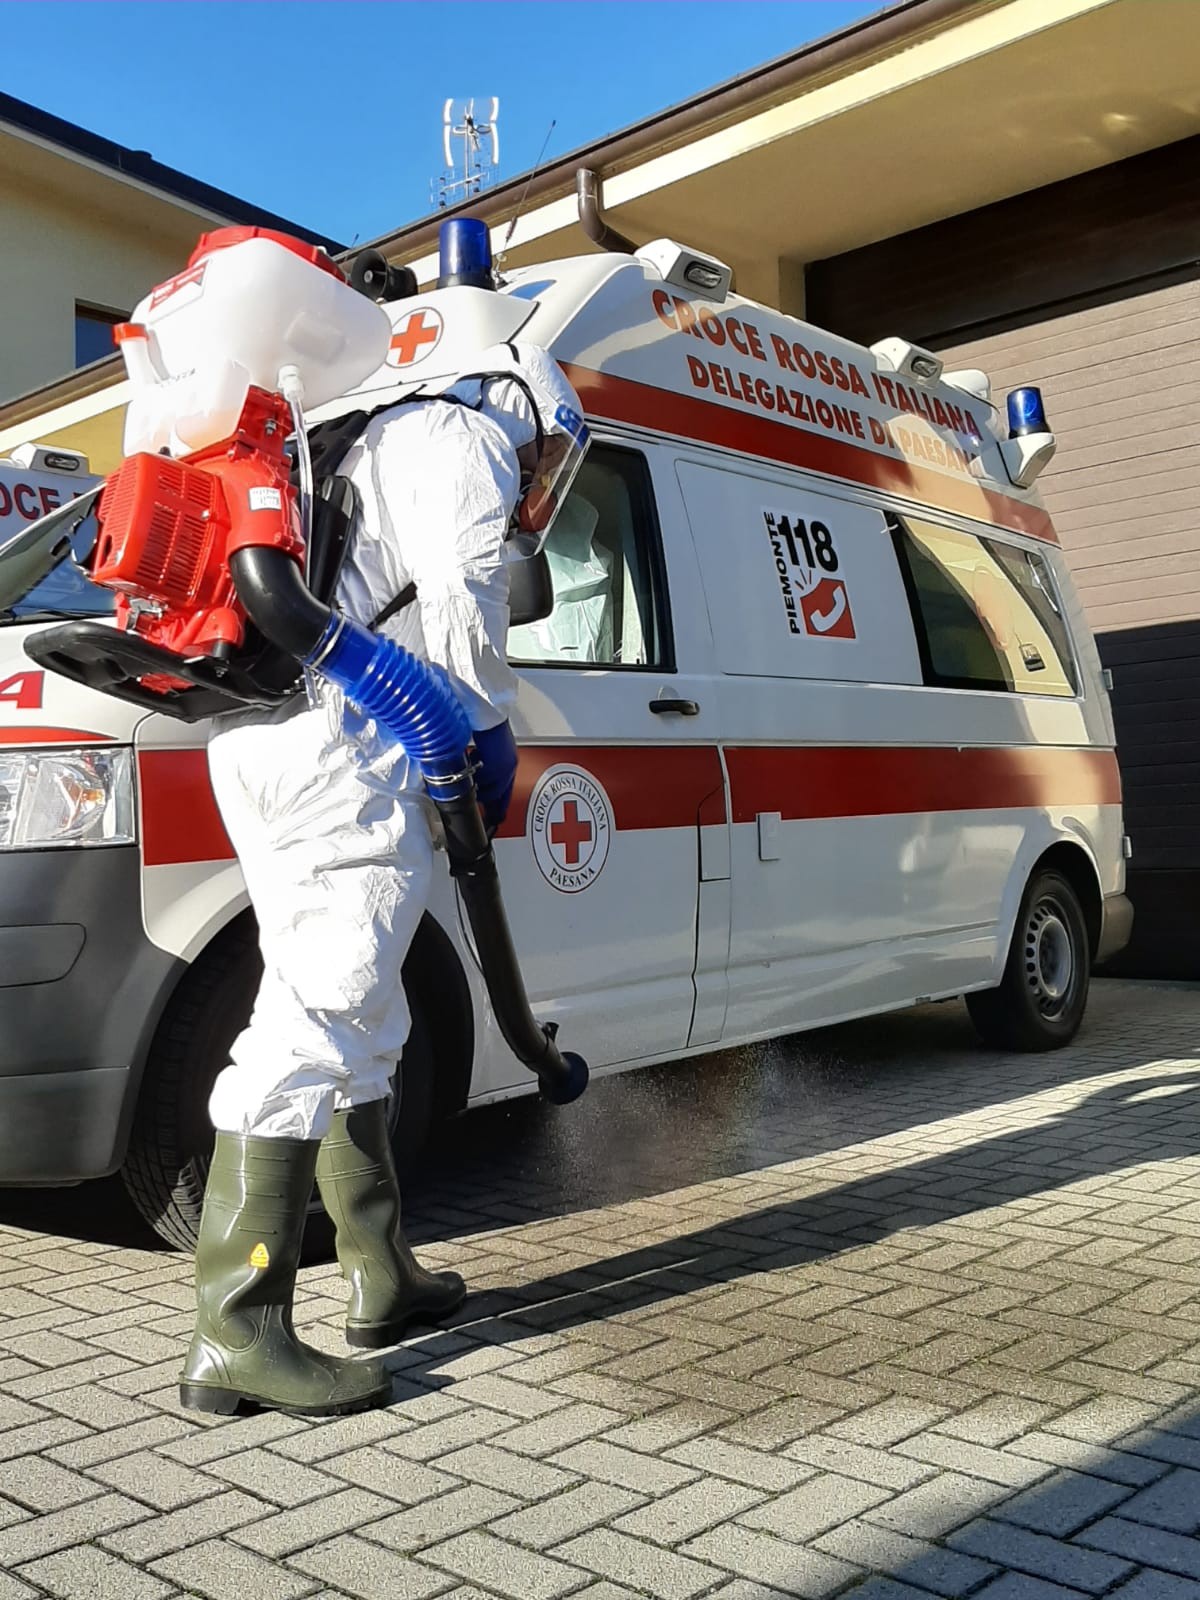  - Croce Rossa Italiana - Comitato di Racconigi